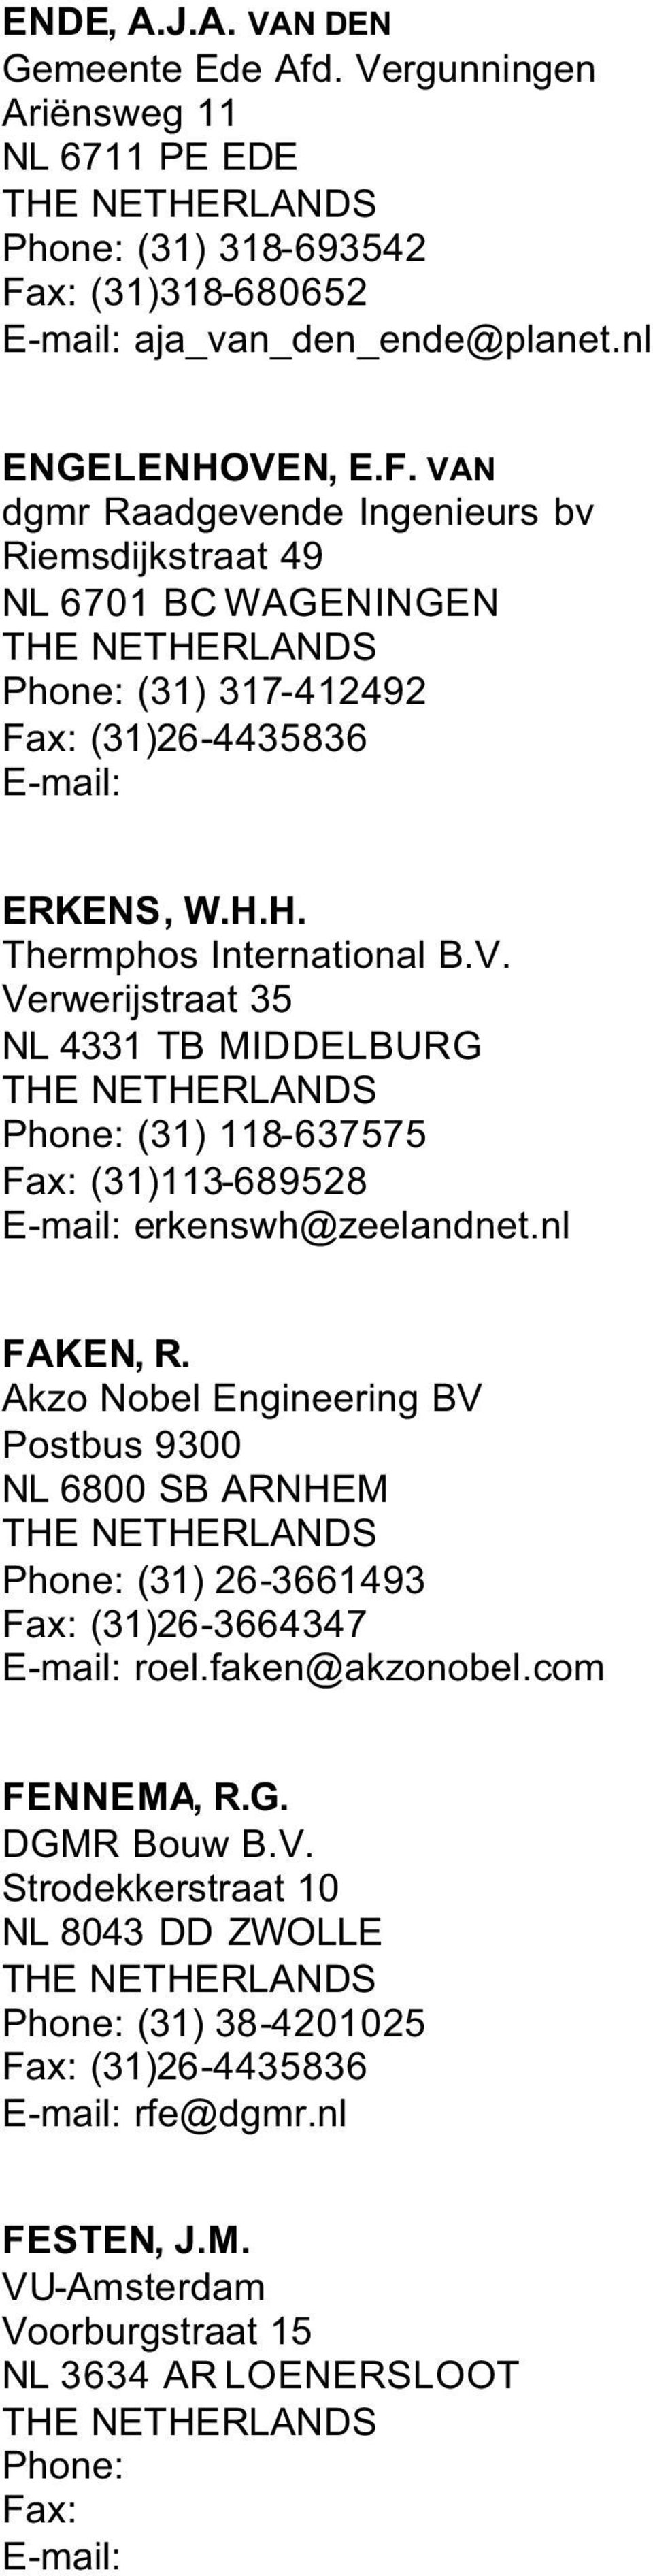 nl FAKEN, R. Akzo Nobel Engineering BV Postbus 9300 NL 6800 SB ARNHEM Phone: (31) 26-3661493 (31)26-3664347 roel.faken@akzonobel.com FENNEMA, R.G. DGMR Bouw B.V. Strodekkerstraat 10 NL 8043 DD ZWOLLE Phone: (31) 38-4201025 (31)26-4435836 rfe@dgmr.